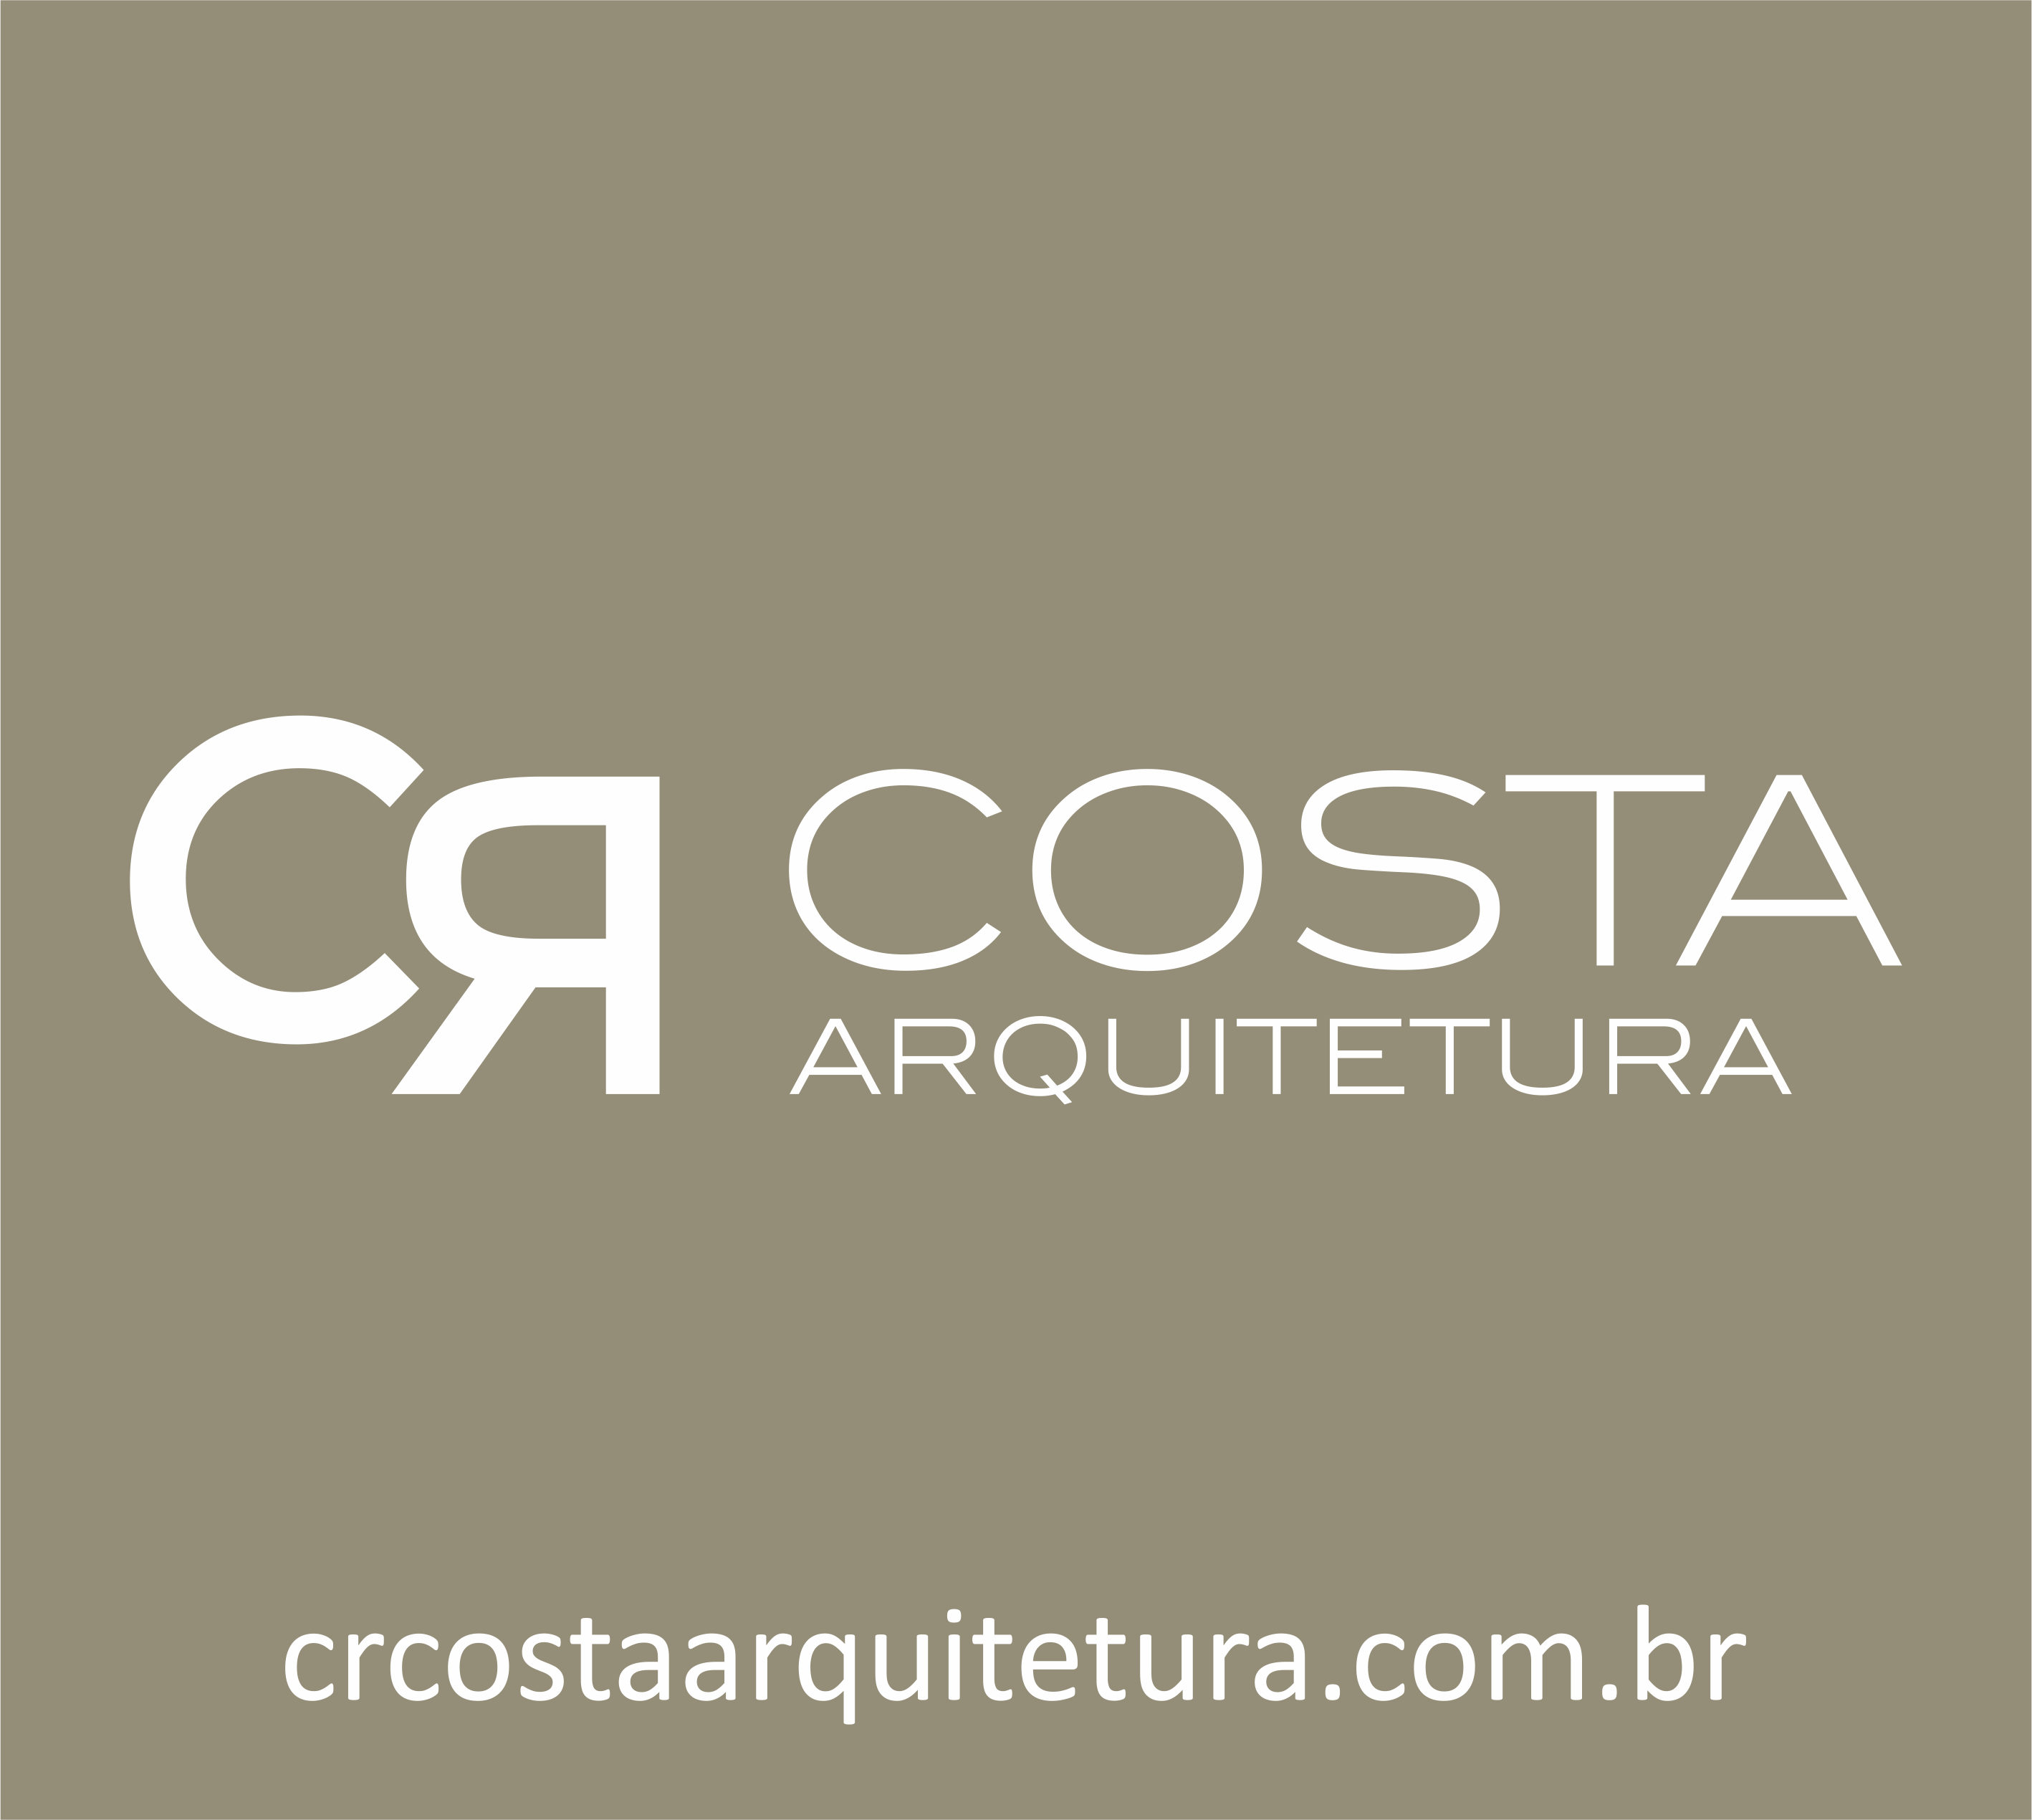 CR Costa Arquitetura